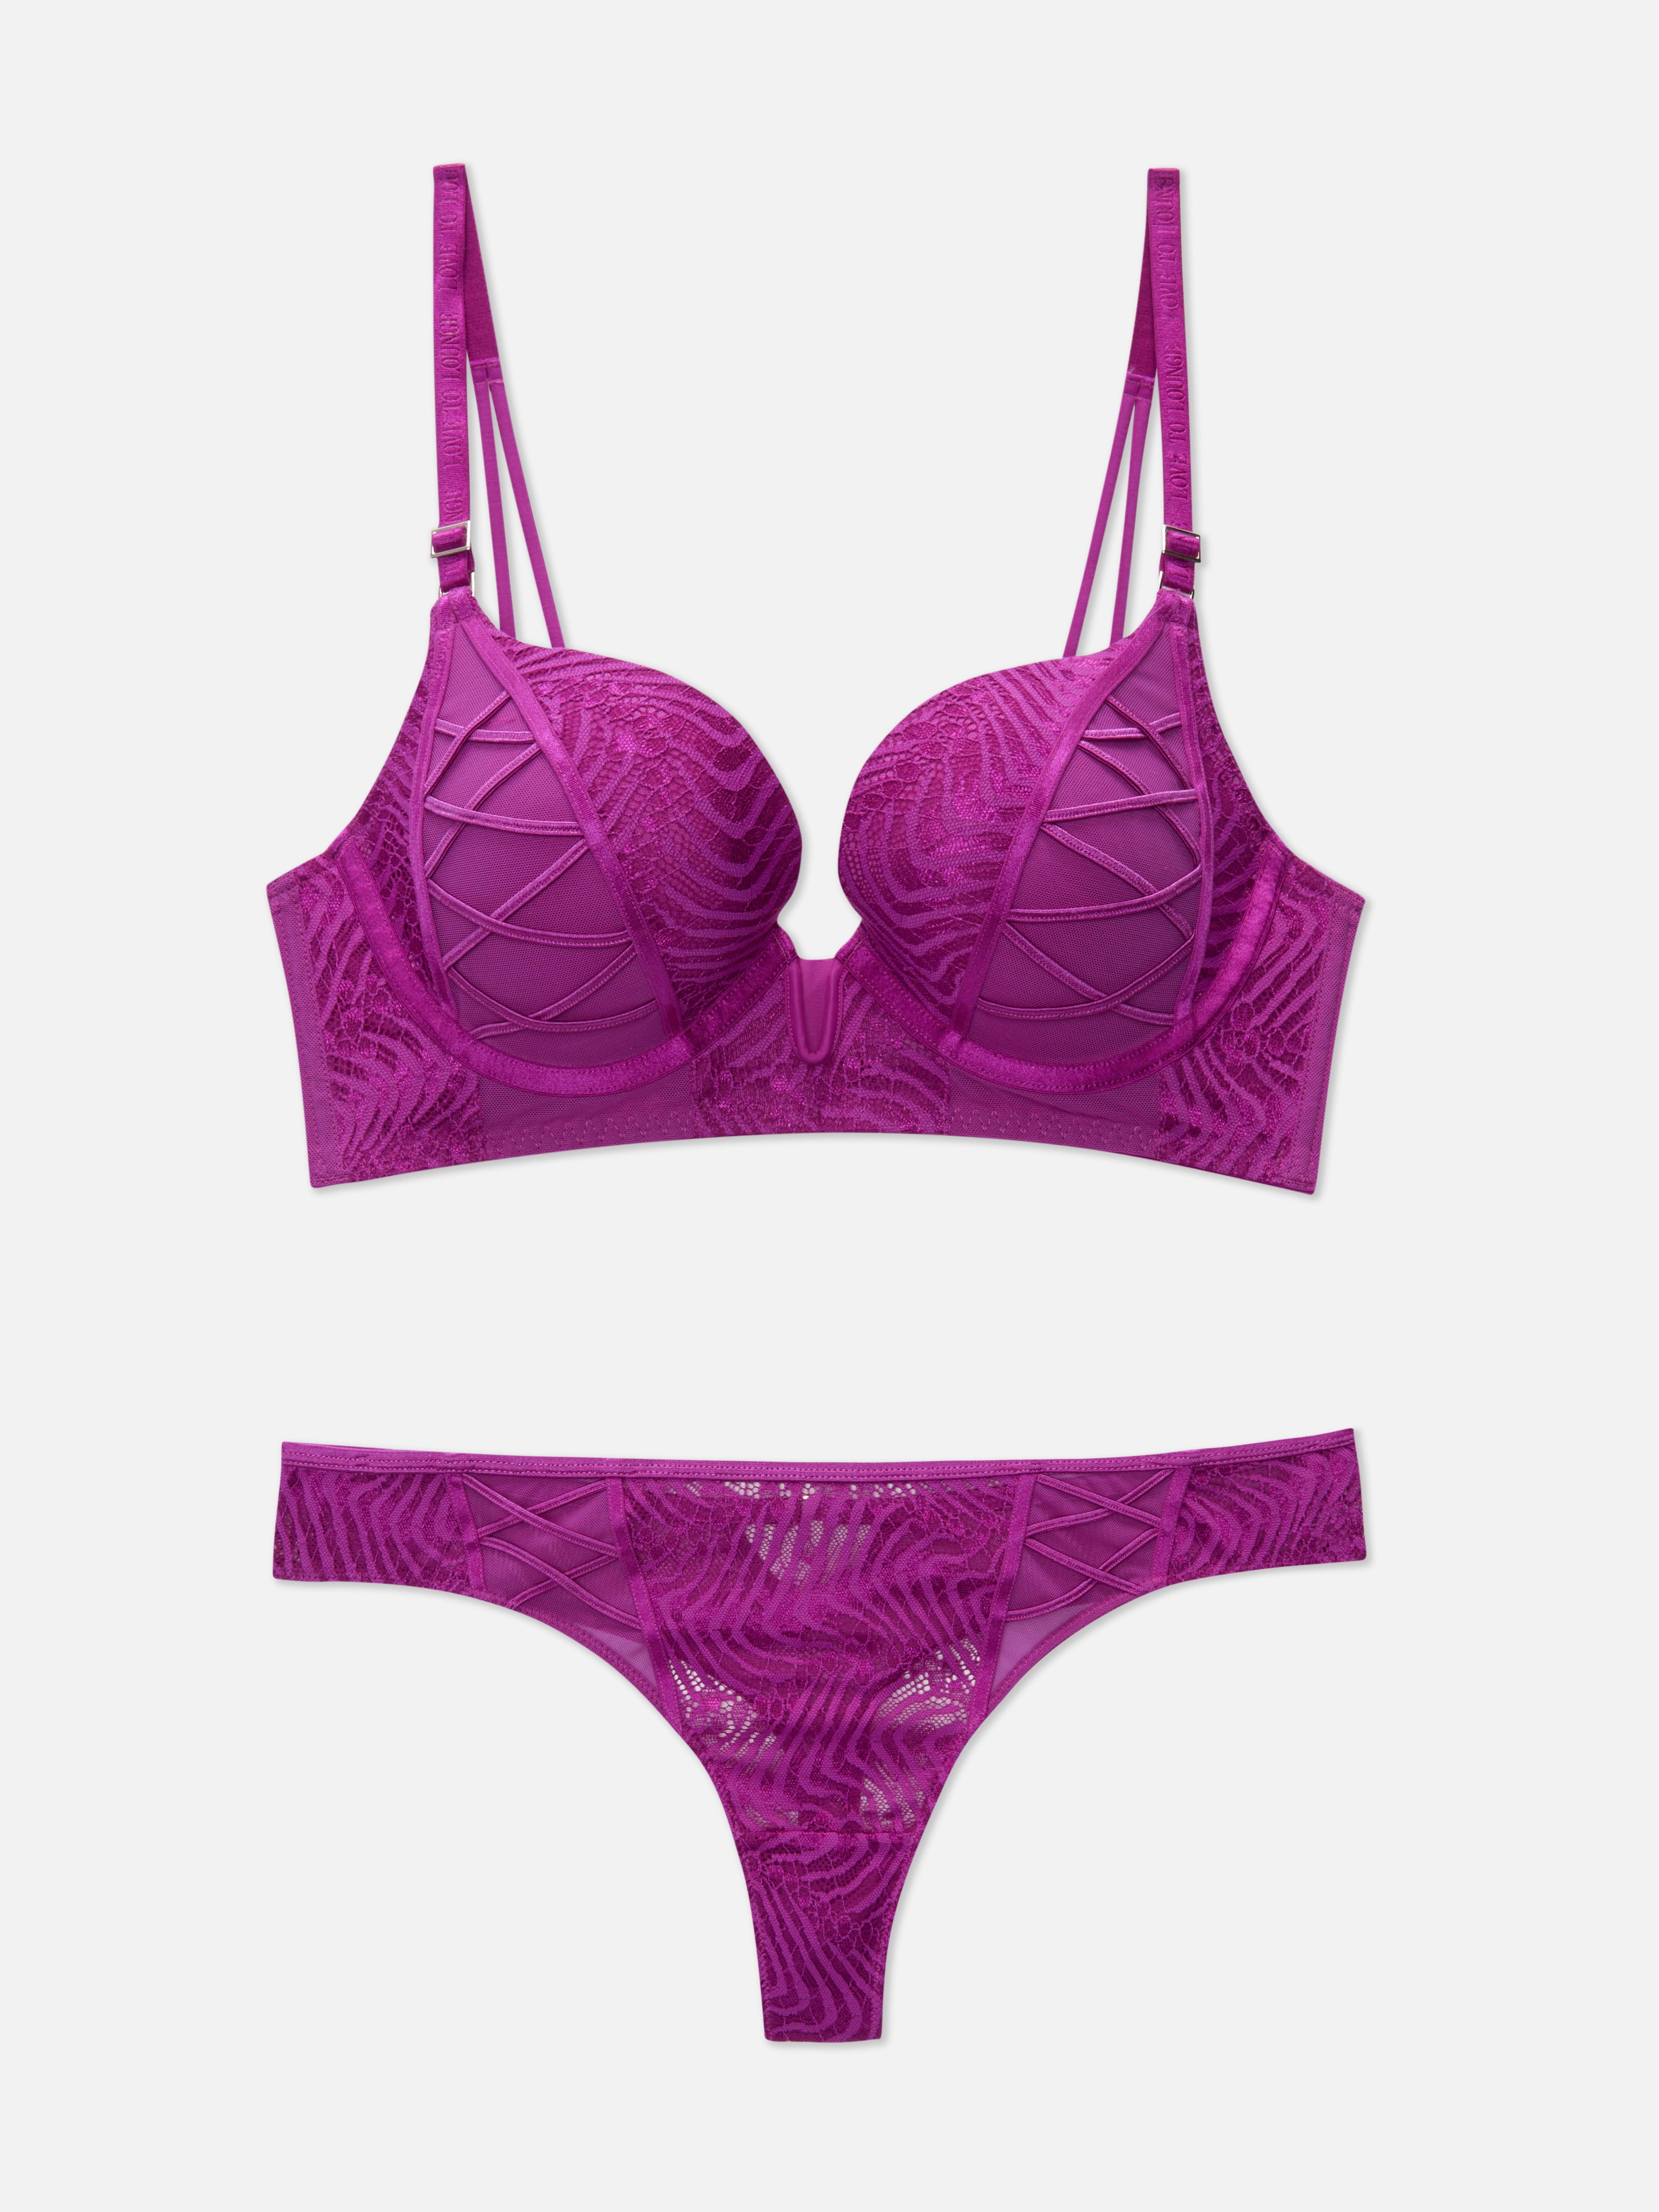 Purple Underwear Sets, Lingerie Sets, Bra & Knicker Sets